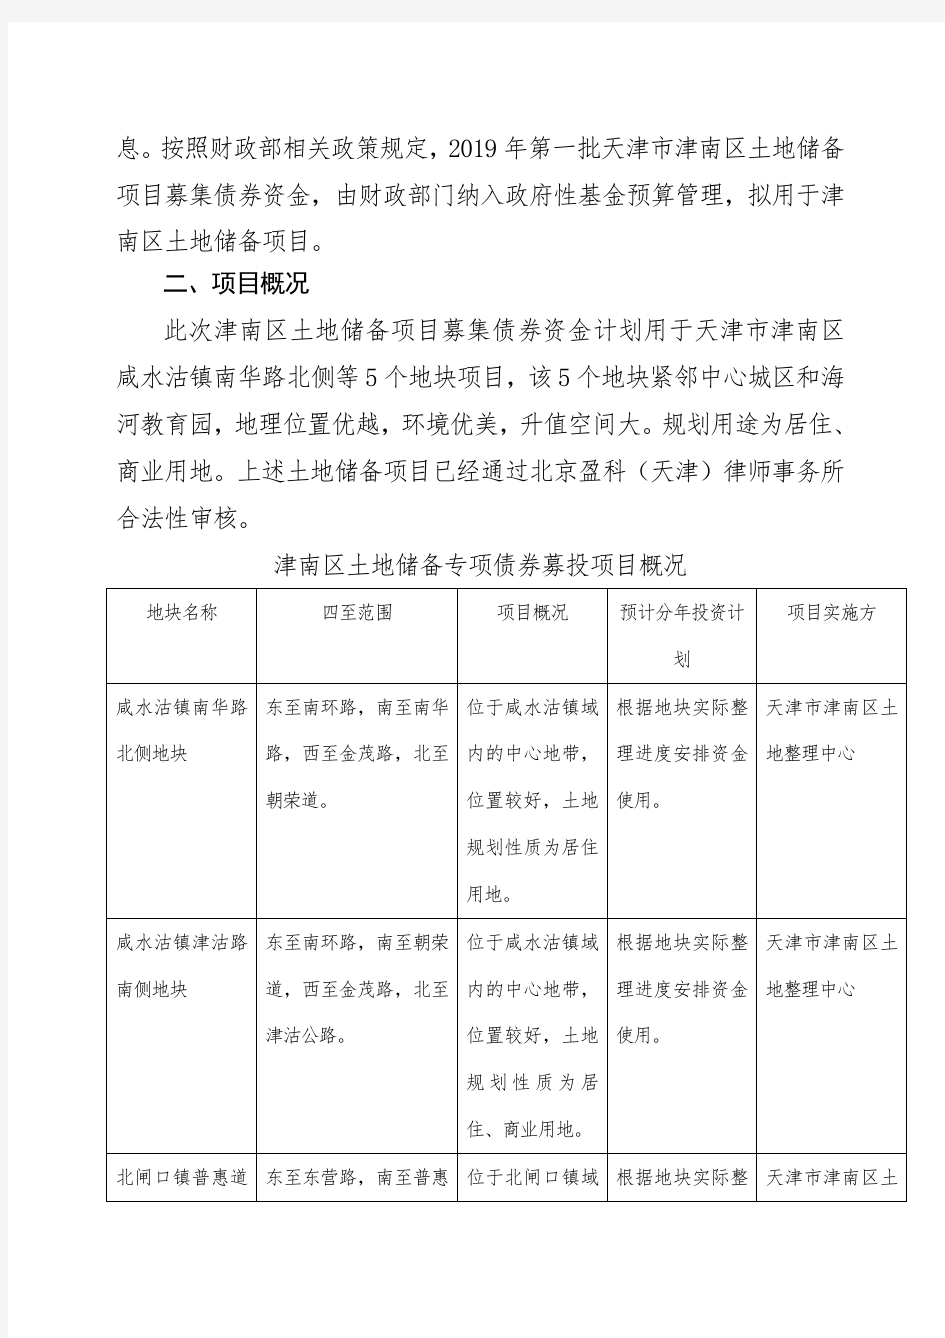 2019年第一批天津津南区土地储备项目基本情况